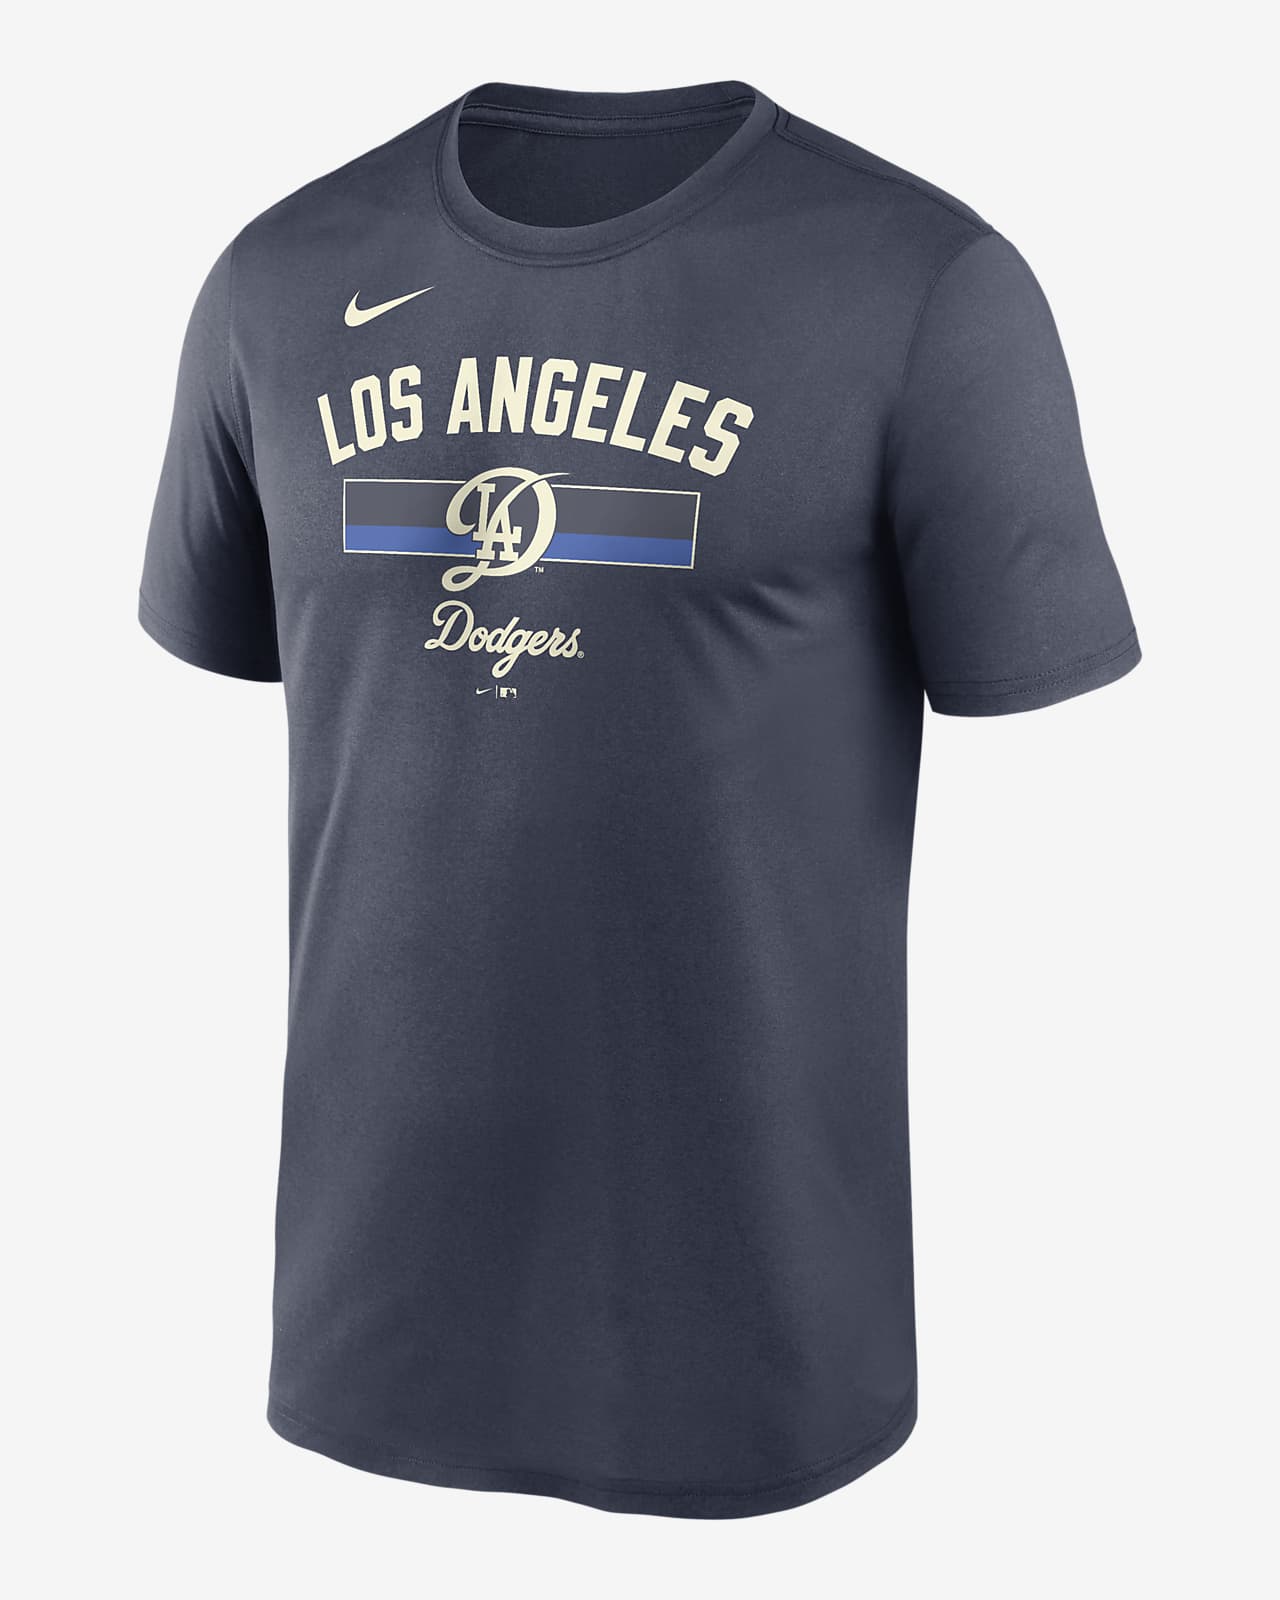 Los Angeles Dodgers City Connect Legend Men's Nike Dri-FIT MLB T-Shirt